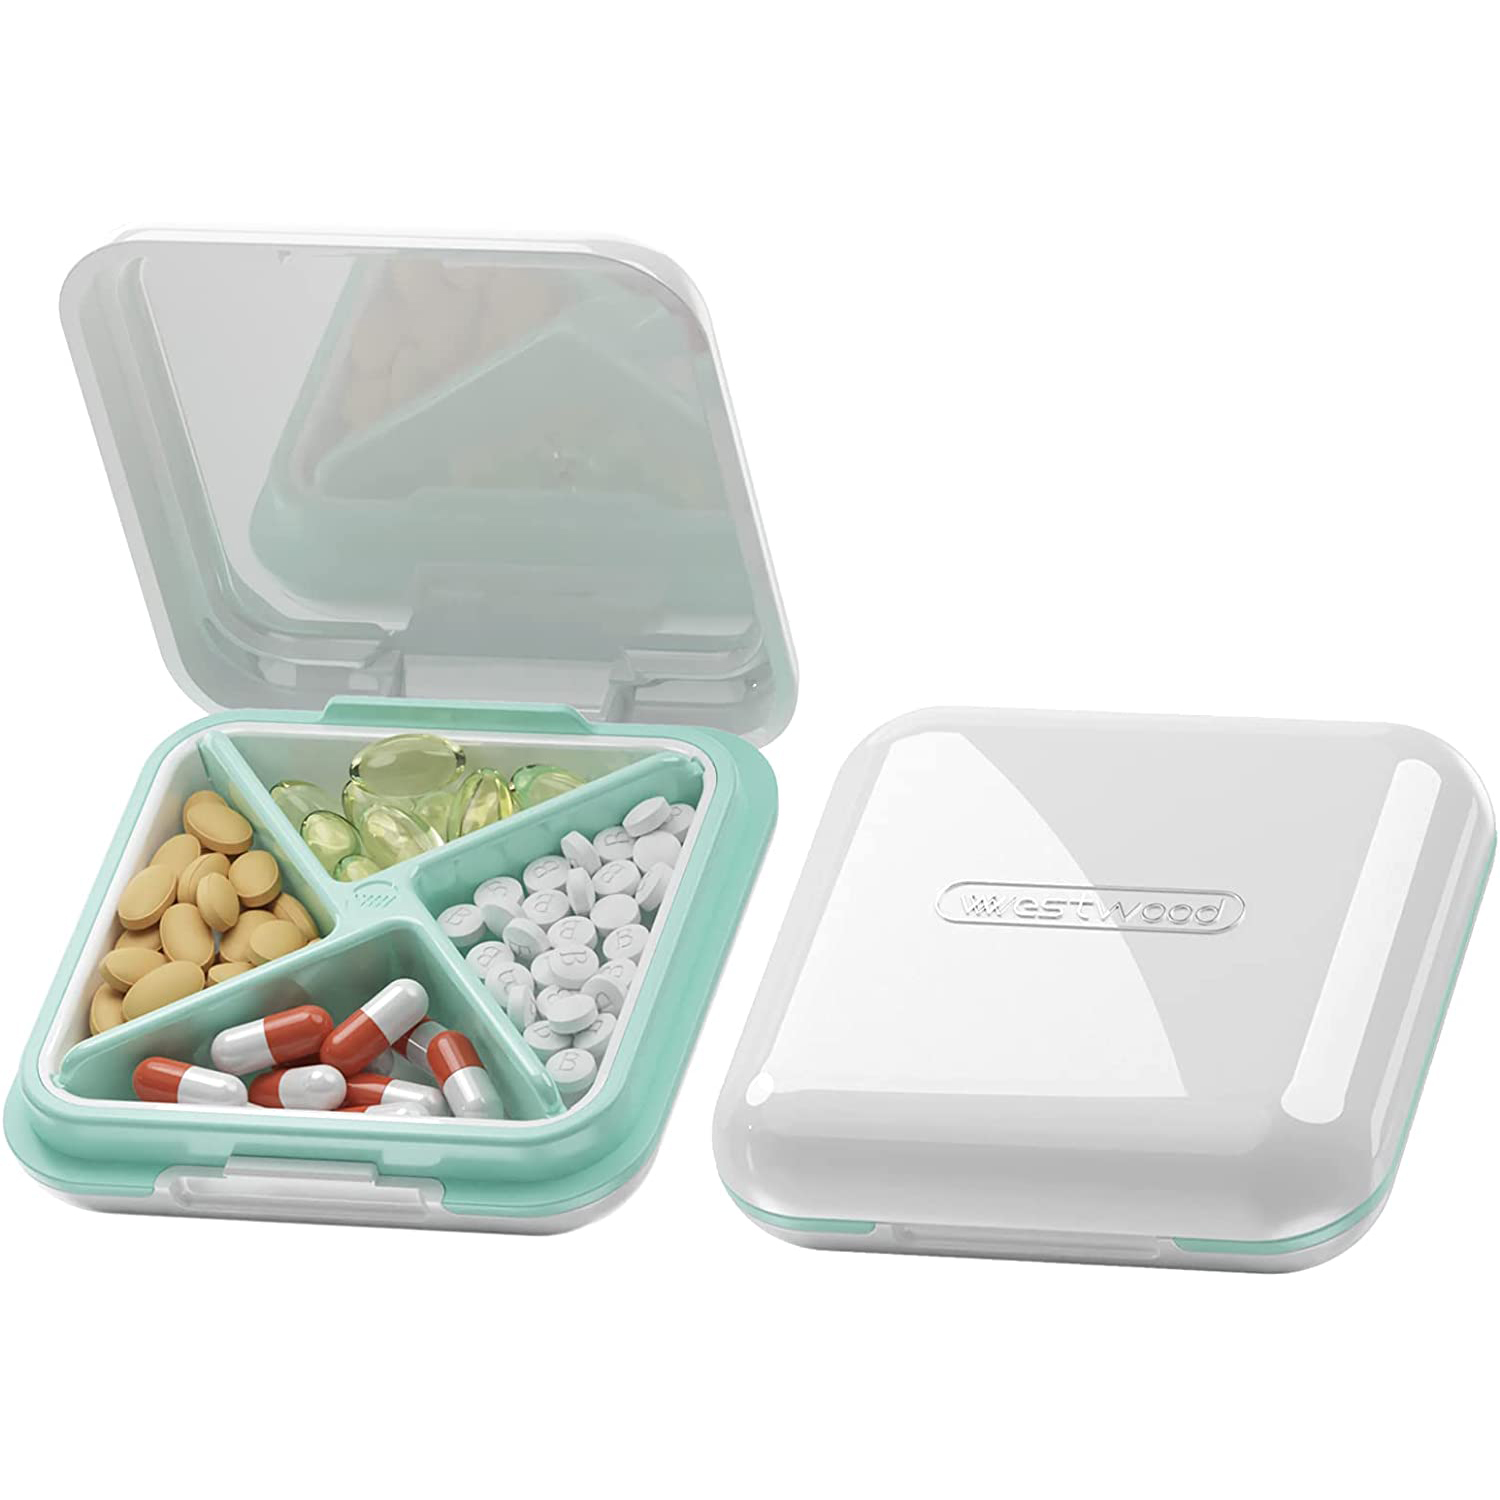 Small Pill Case Travel Daily Pill Organizer Portable Pretty - Temu